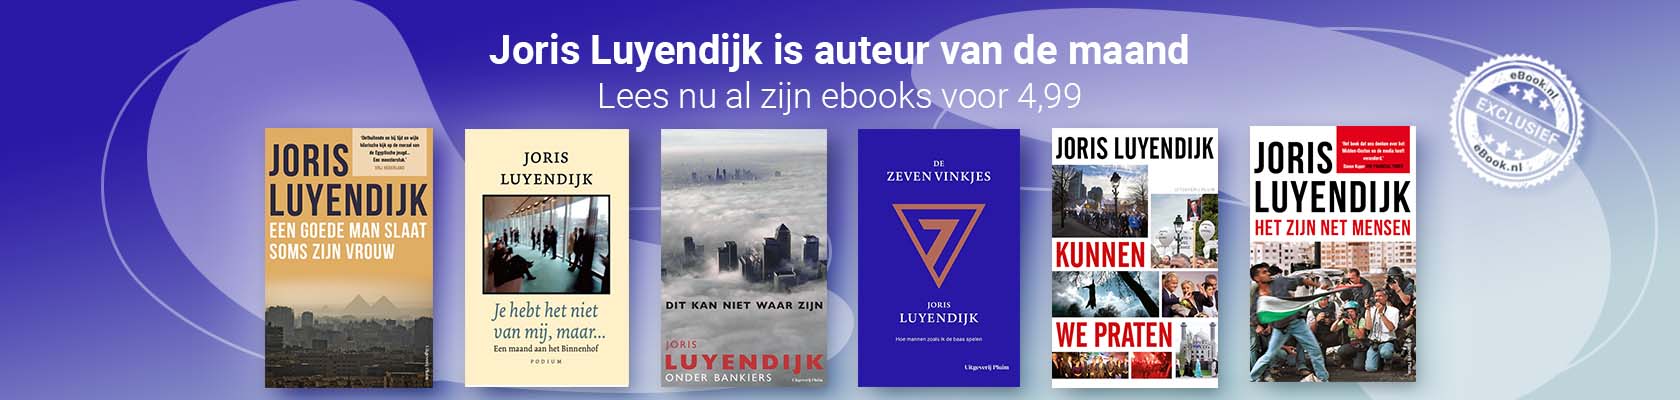 Auteur van de maand: Joris Luyendijk